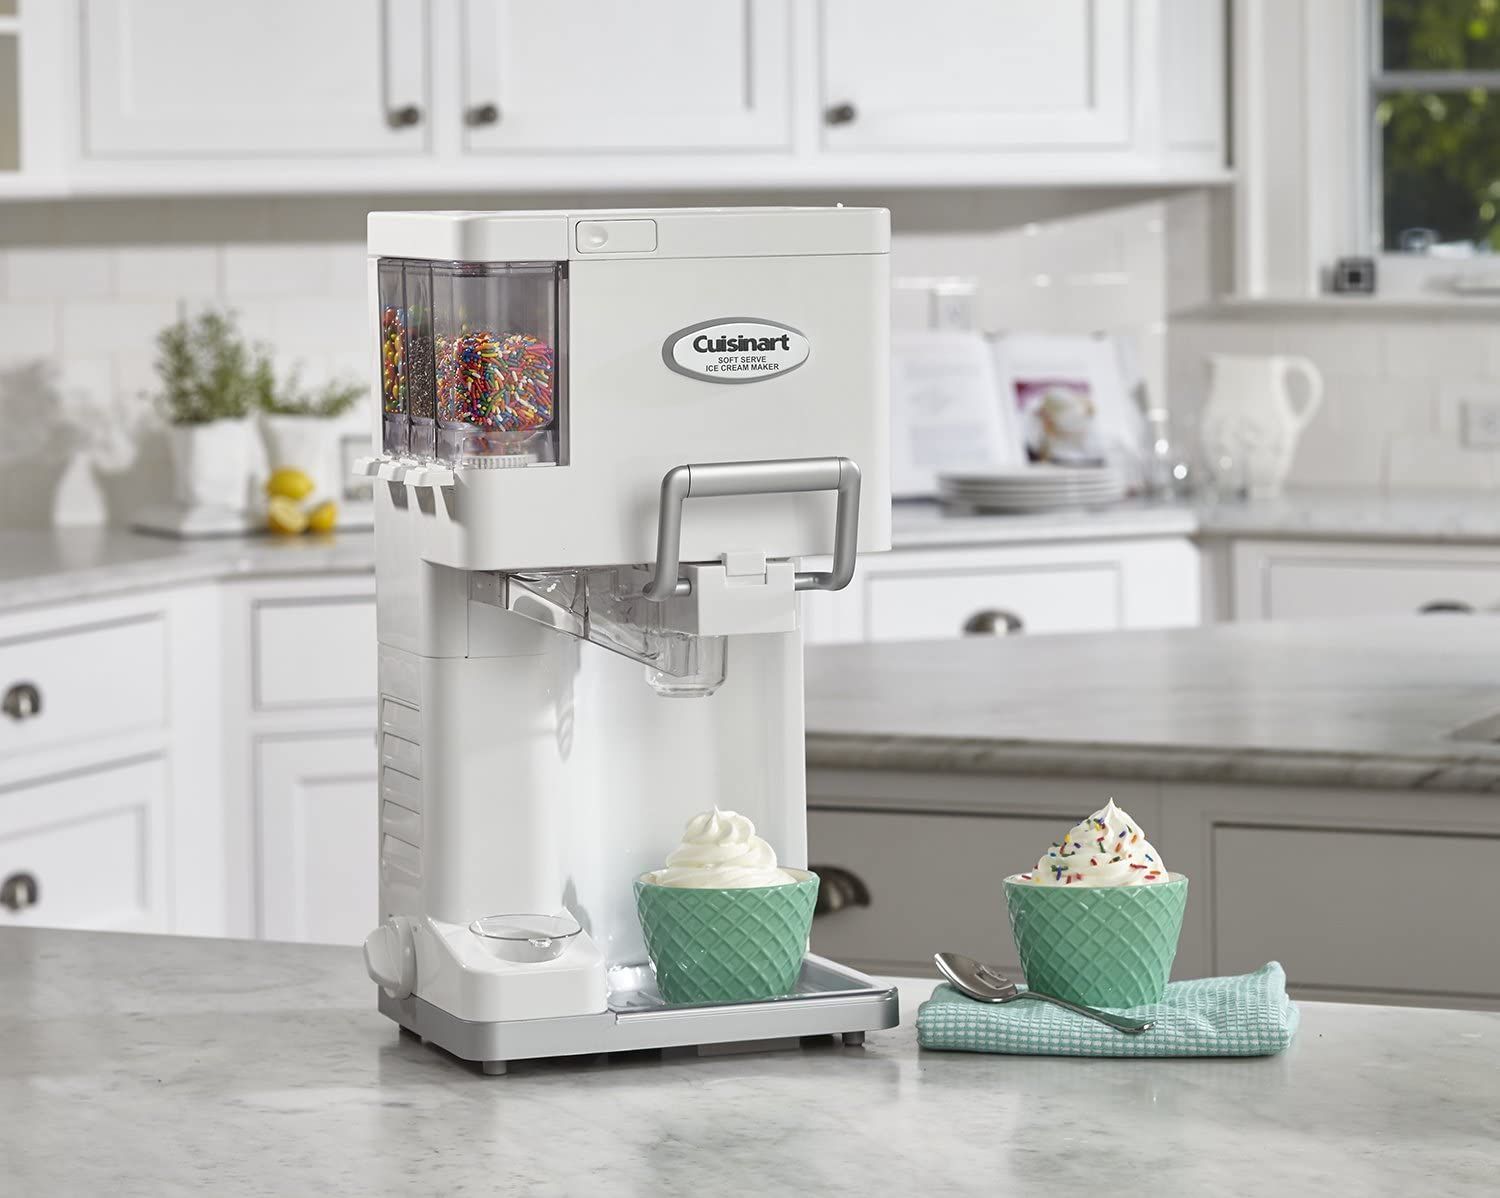 Buy Ice Cream Maker Machine Lovely DIY Ice Cream Ball for kids